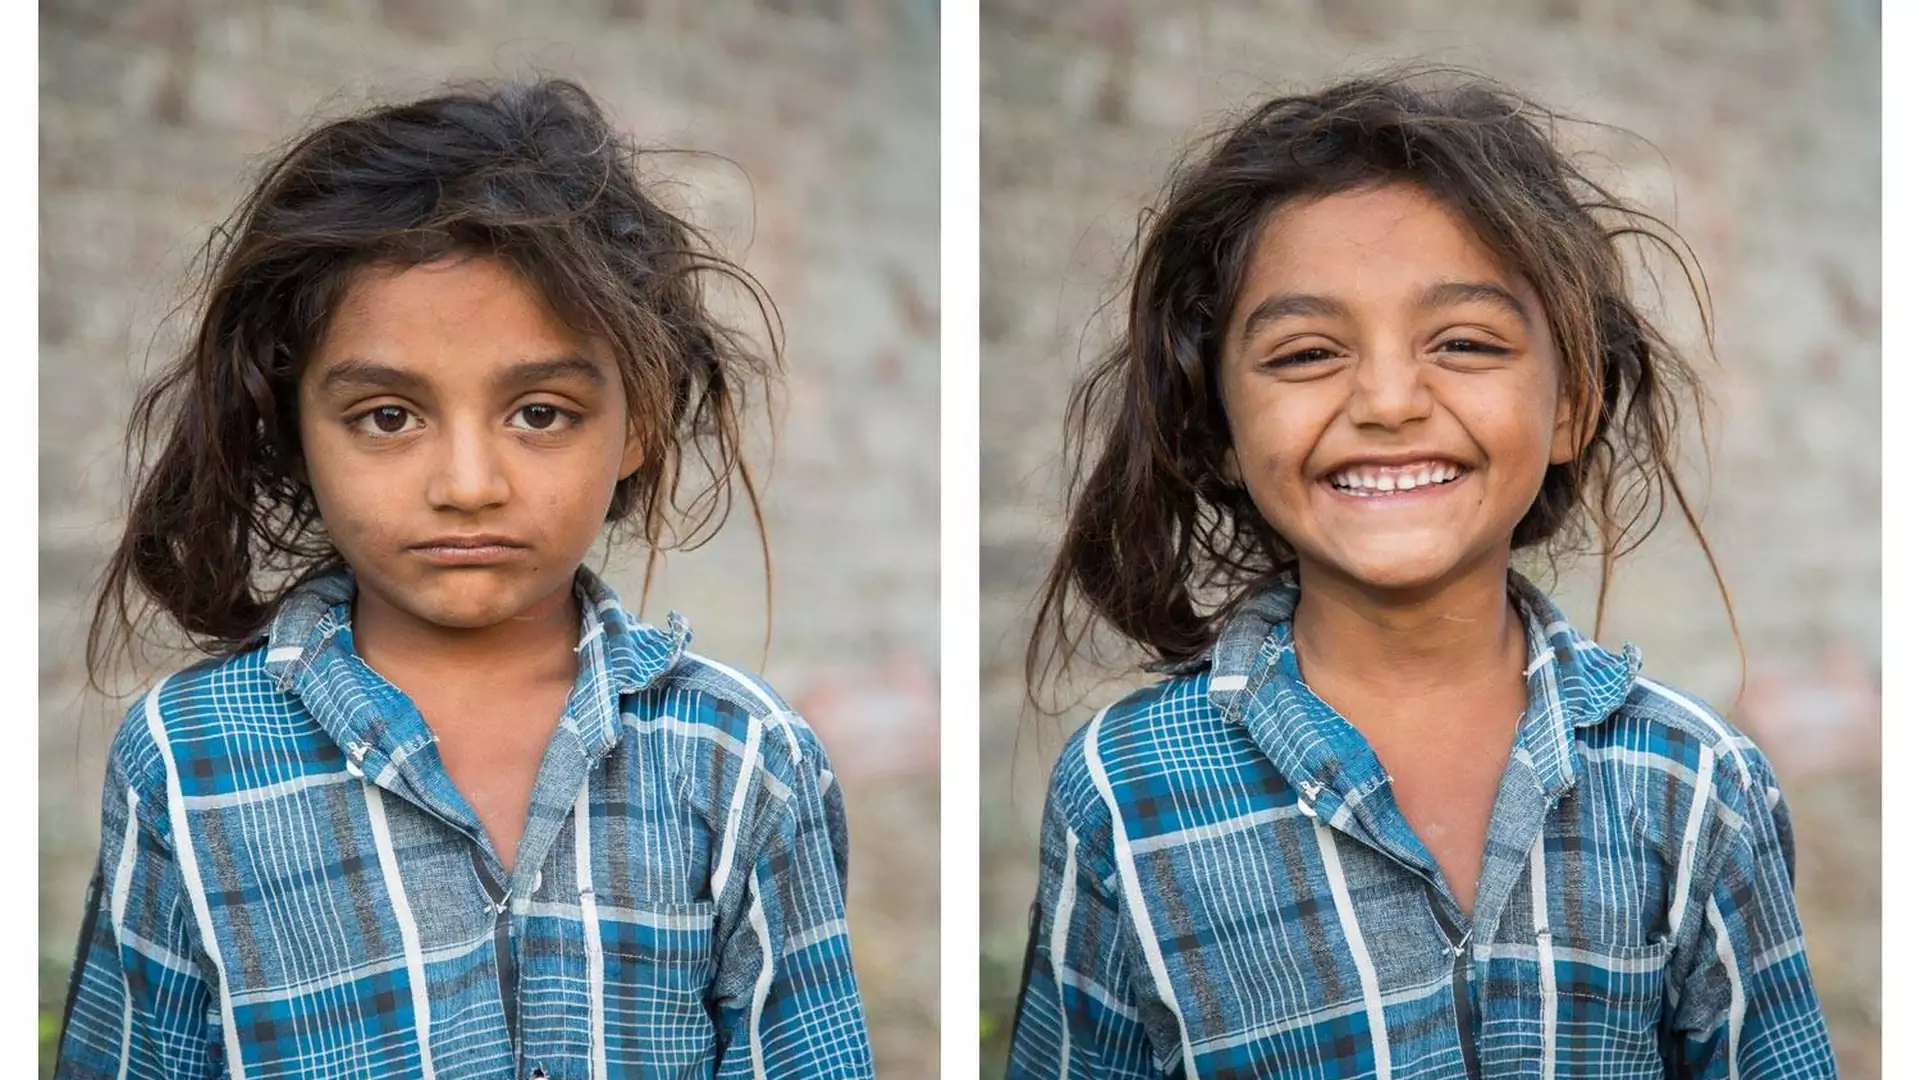 "Poprosiłem ich o uśmiech" - ten projekt udowadnia, że radość na twarzy zmienia postrzeganie innych